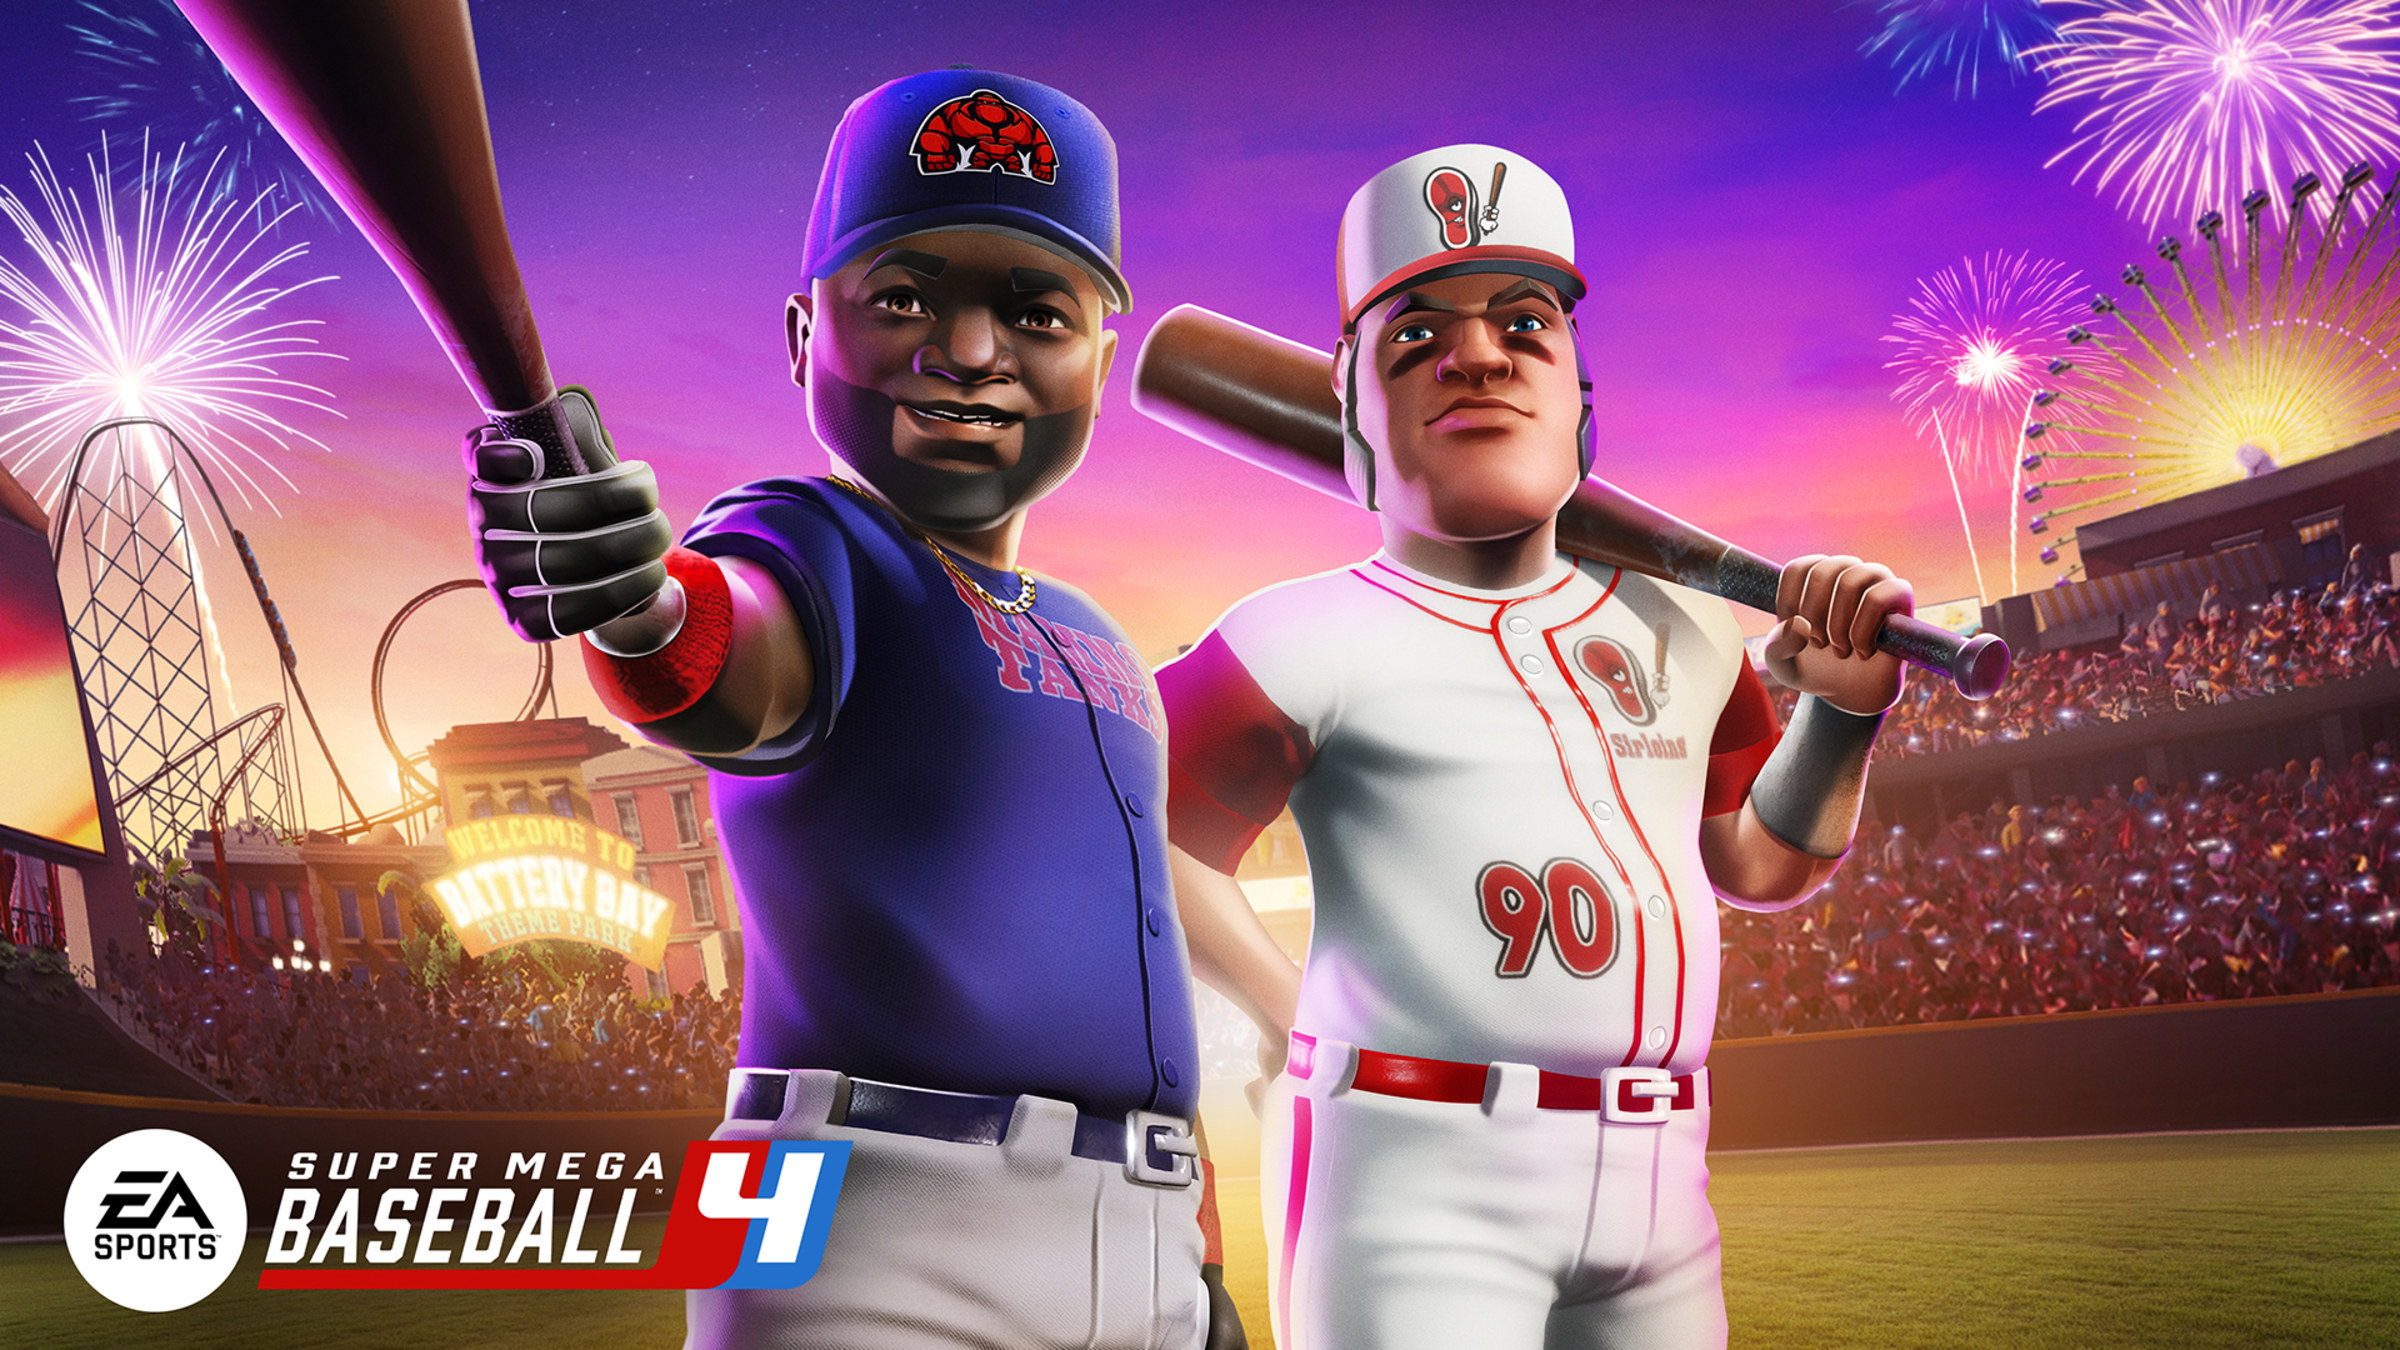 Super Mega Baseball™ 4 for Nintendo Switch